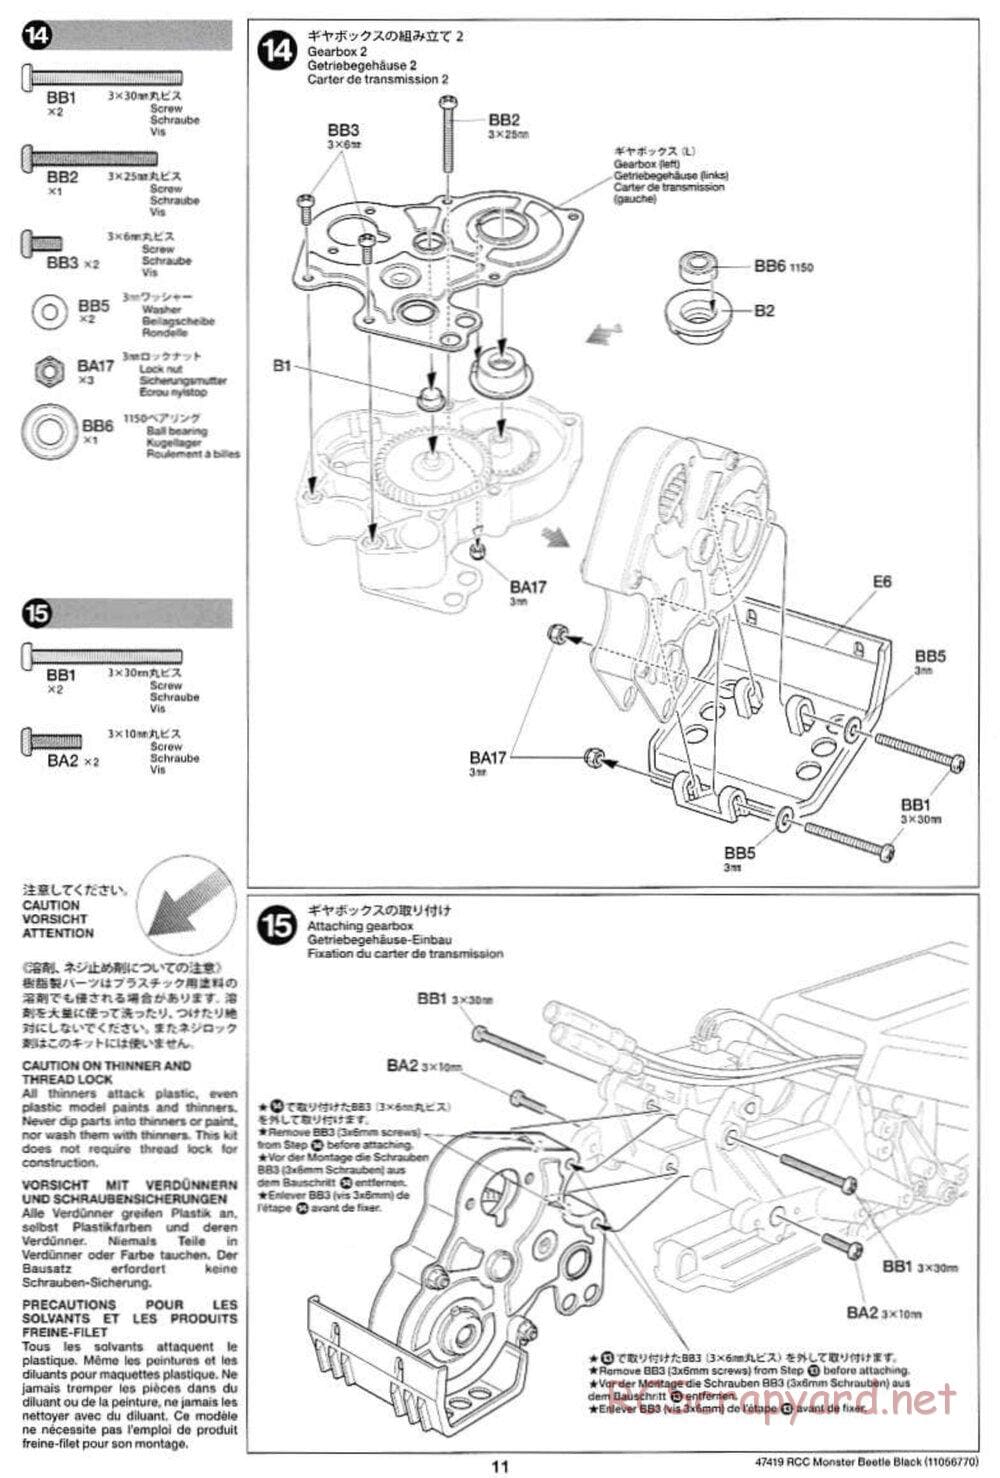 Tamiya - Monster Beetle Black Edition - ORV Chassis - Manual - Page 11